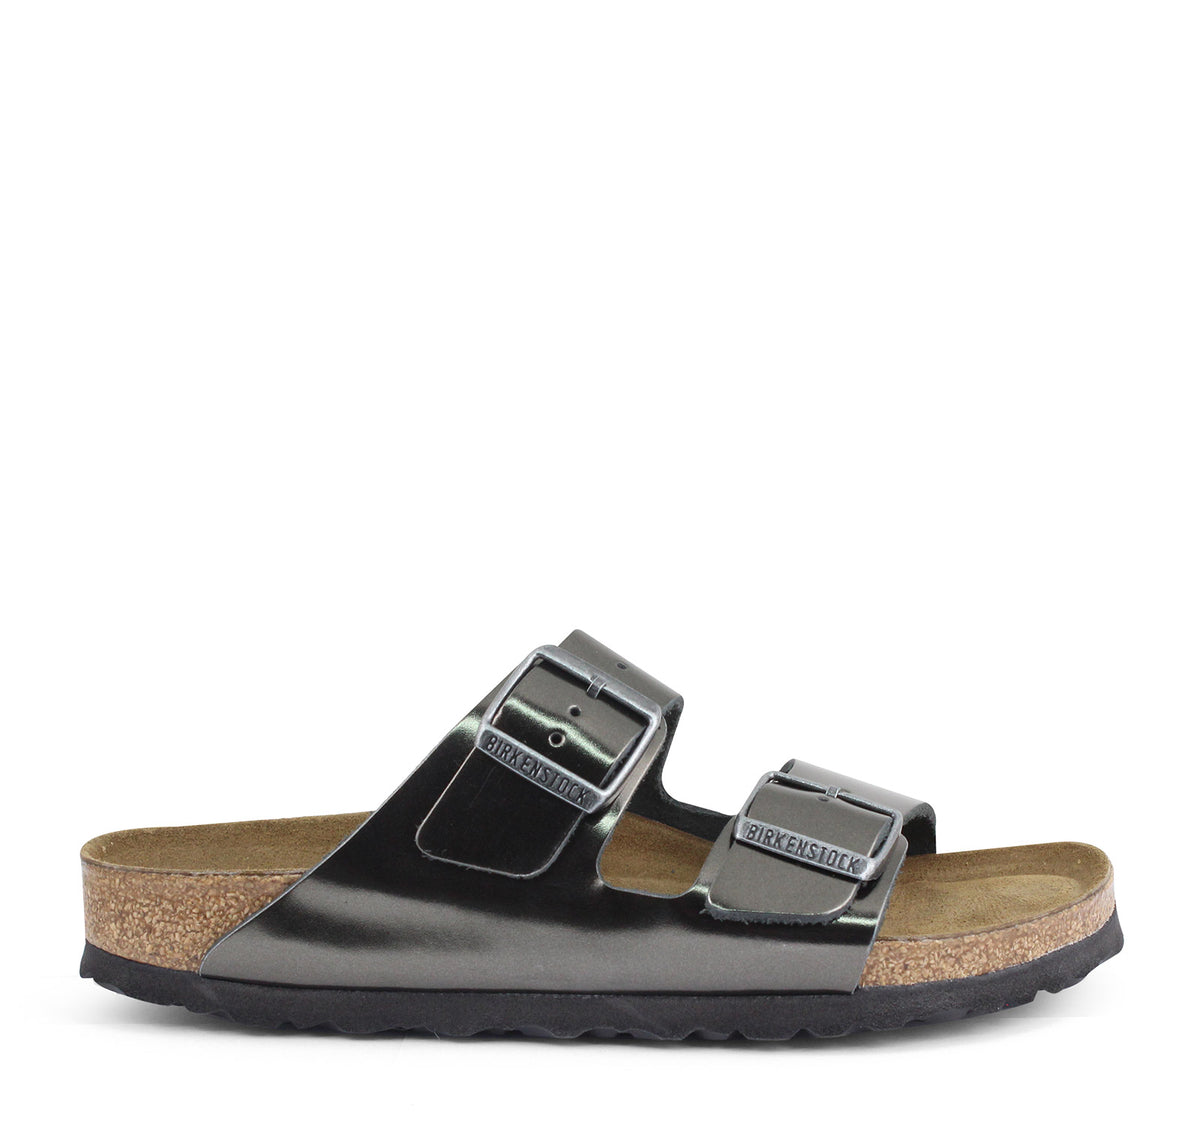 On Arizona Birkenstock Metallic The Footbed Soft EDGE Sandal–